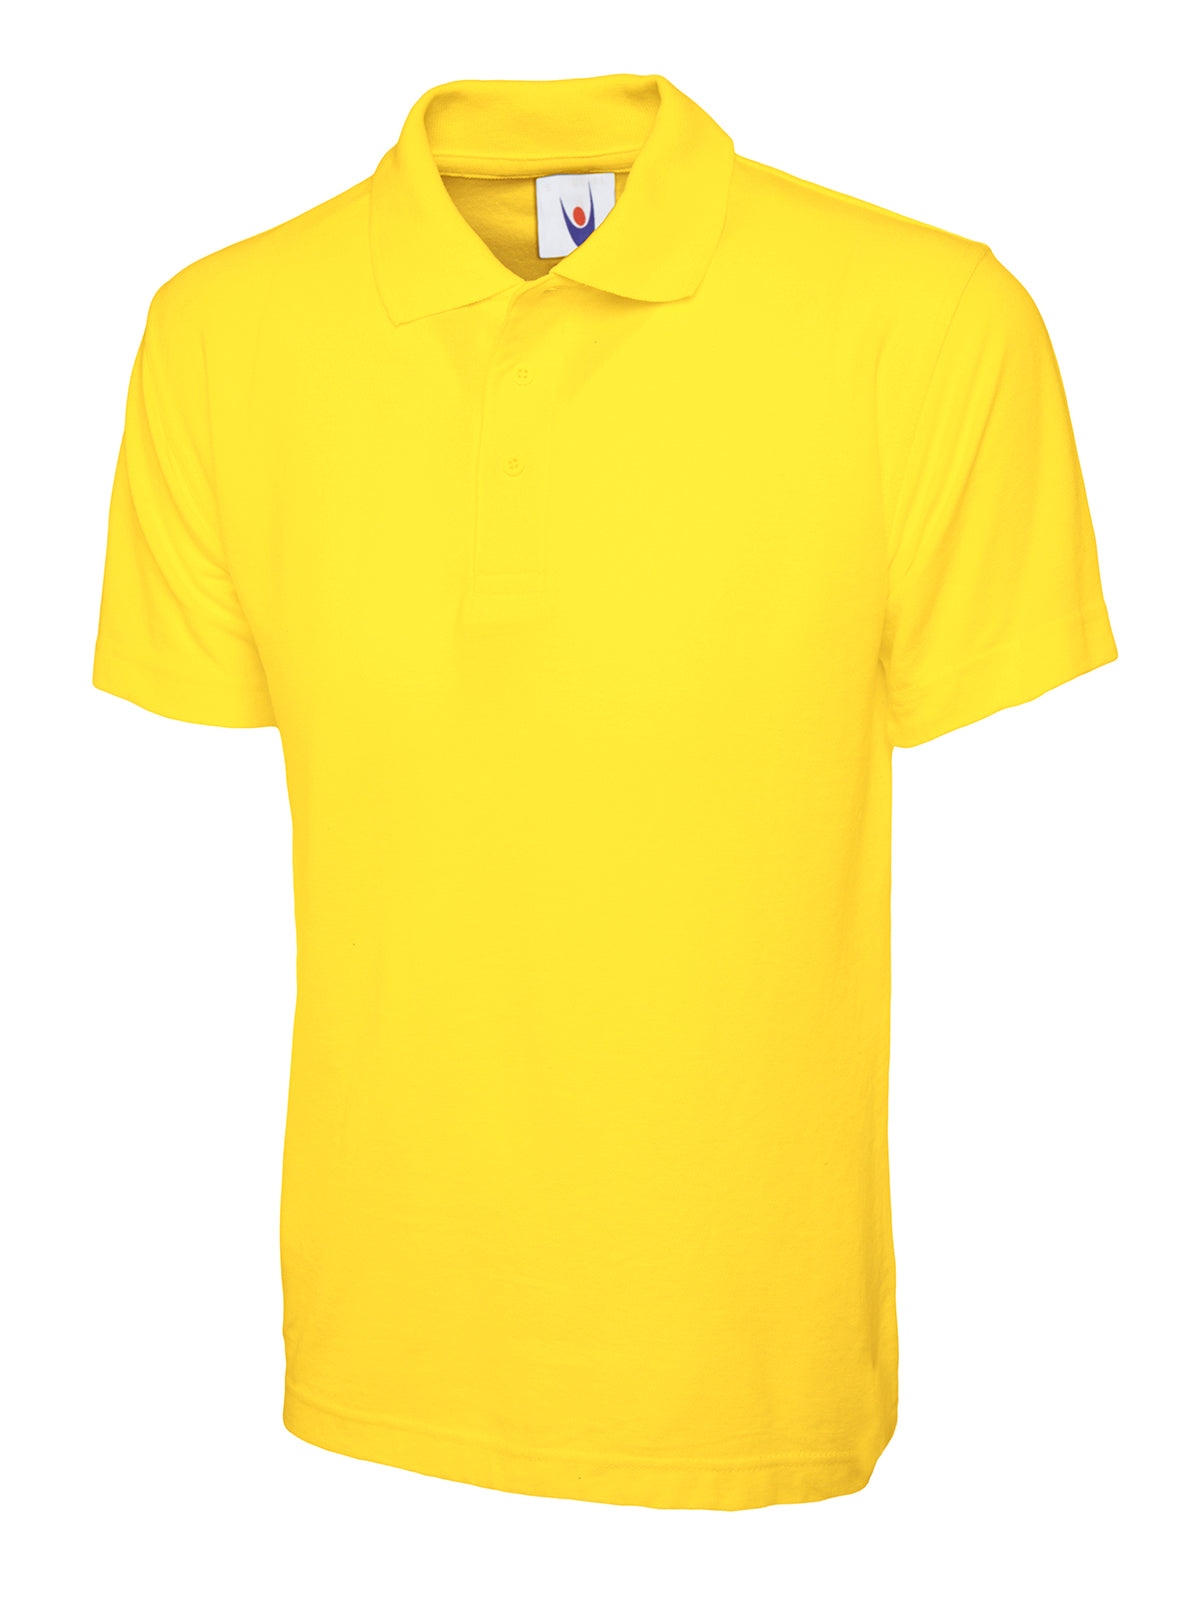 Uneek Childrens Poloshirt UC103 - Yellow